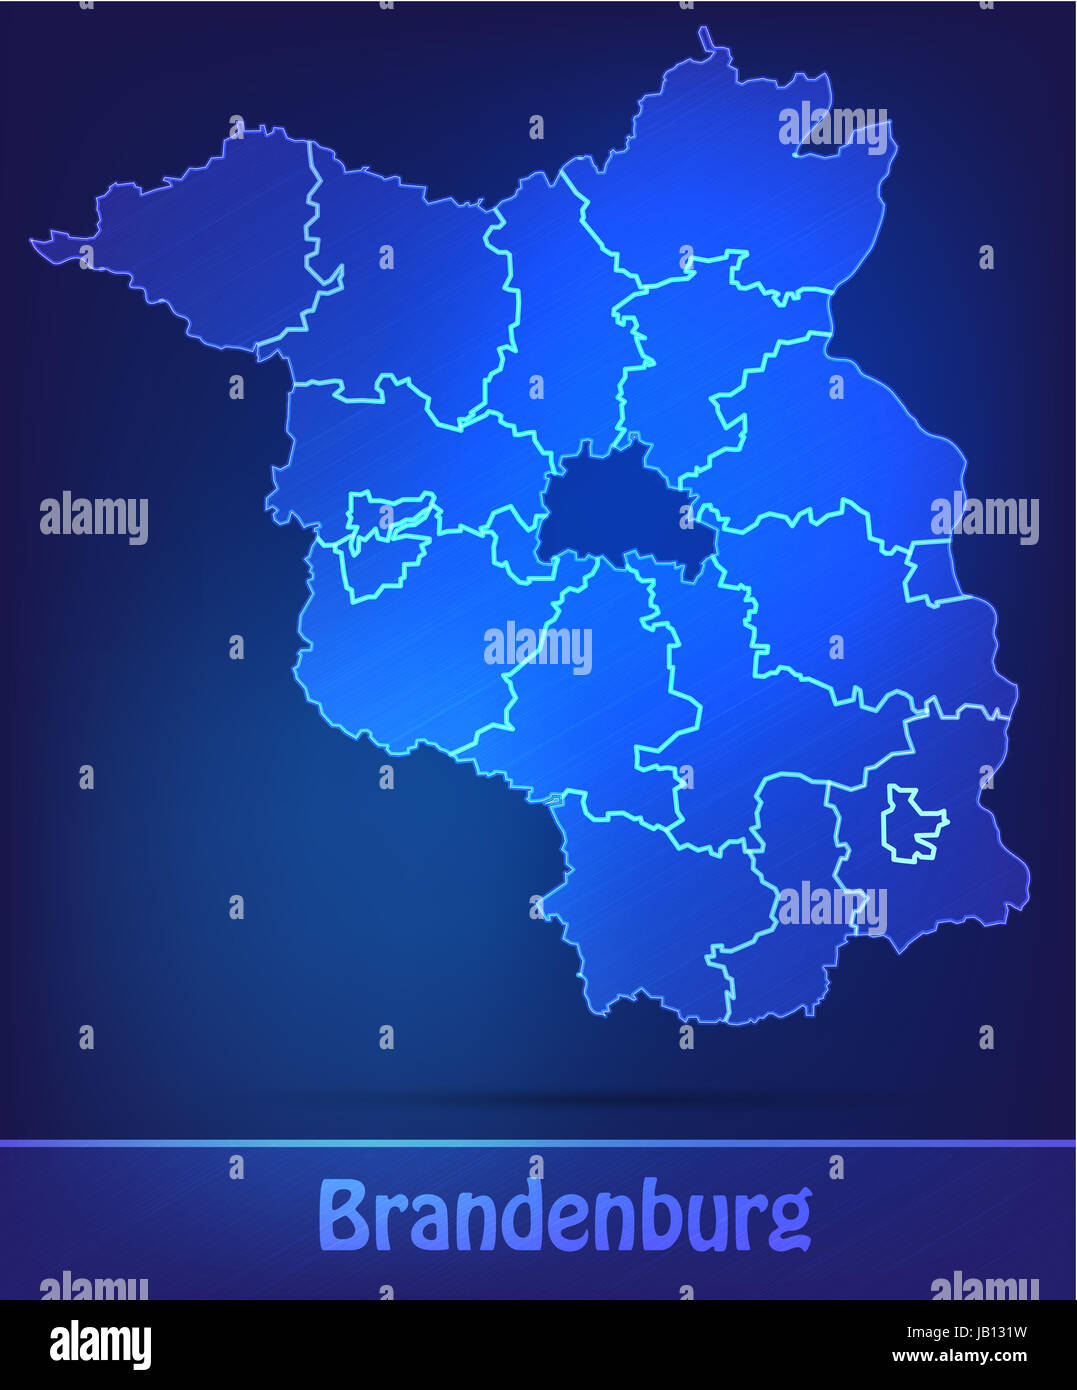 Brandeburgo in Deutschland als Grenzkarte mit Grenzen als Scribble. Durch die ansprechende Gestaltung fügt sich die Karte perfekt in Ihr Vorhaben ein. Foto Stock